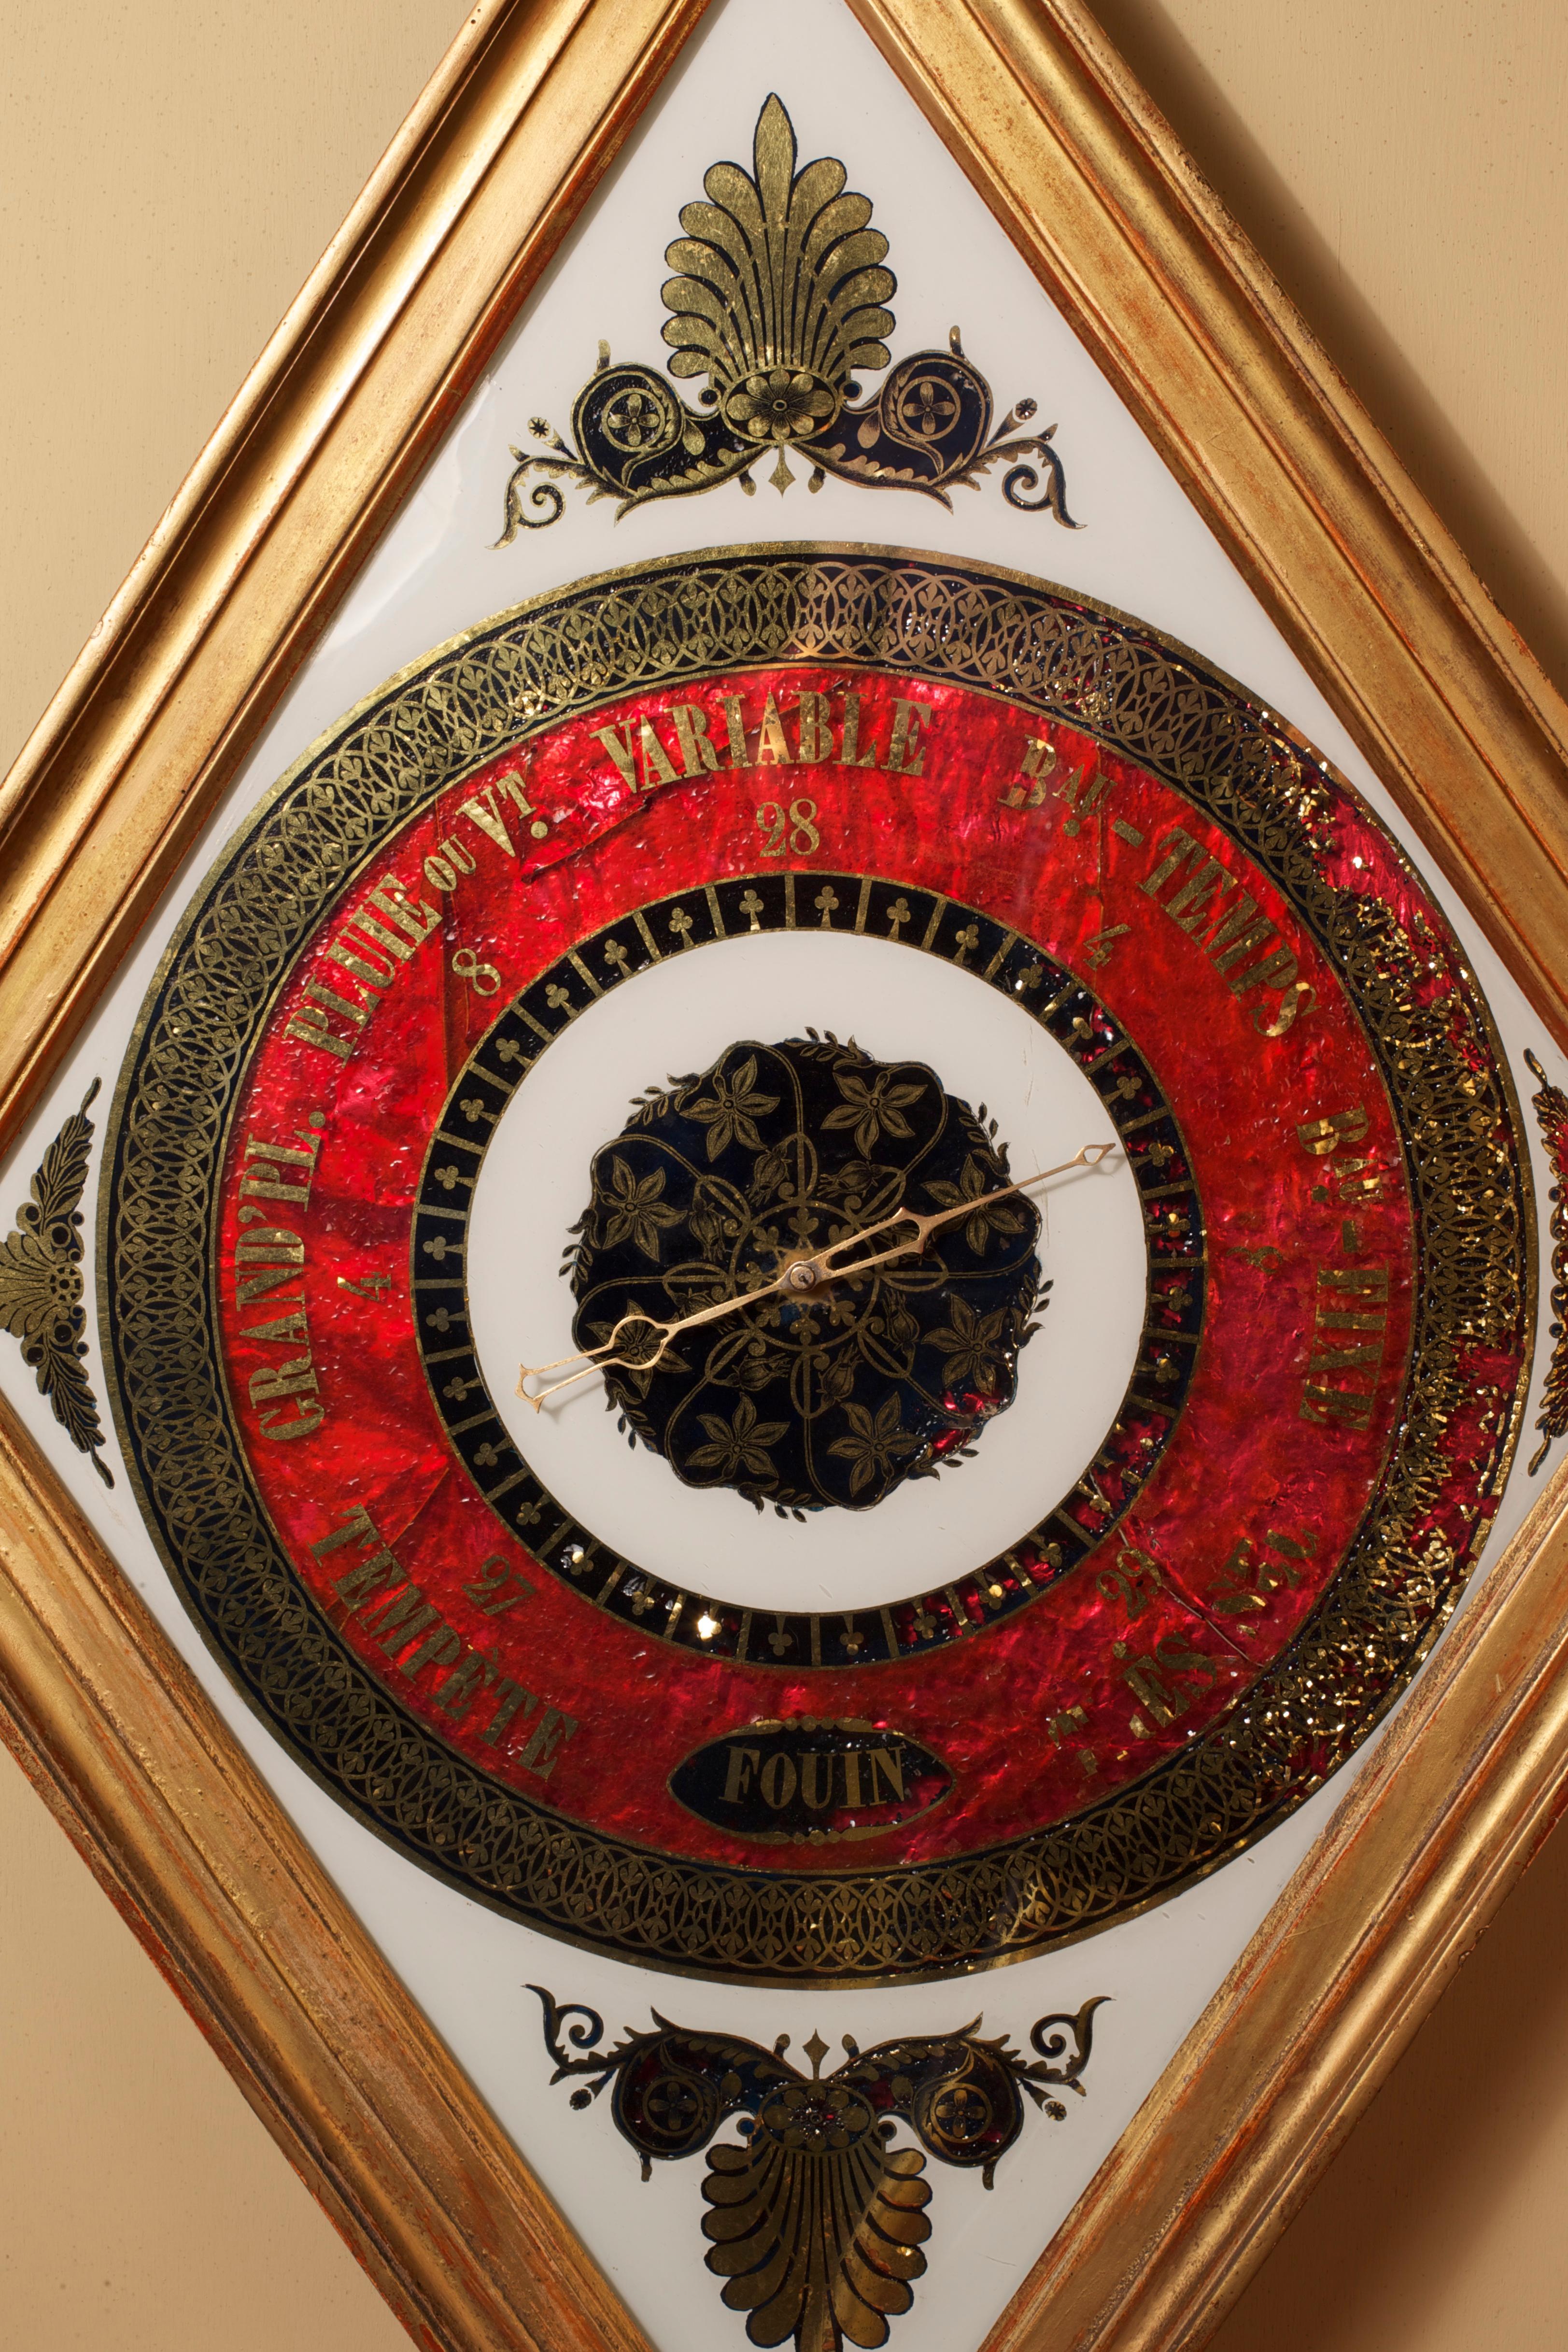 Französisches vergoldetes Diamantbarometer mit Verre Eglomise-Zifferblatt mit sieben Wetteranzeigen und originalem Zeiger, signiert 'Fouin', um 1830.